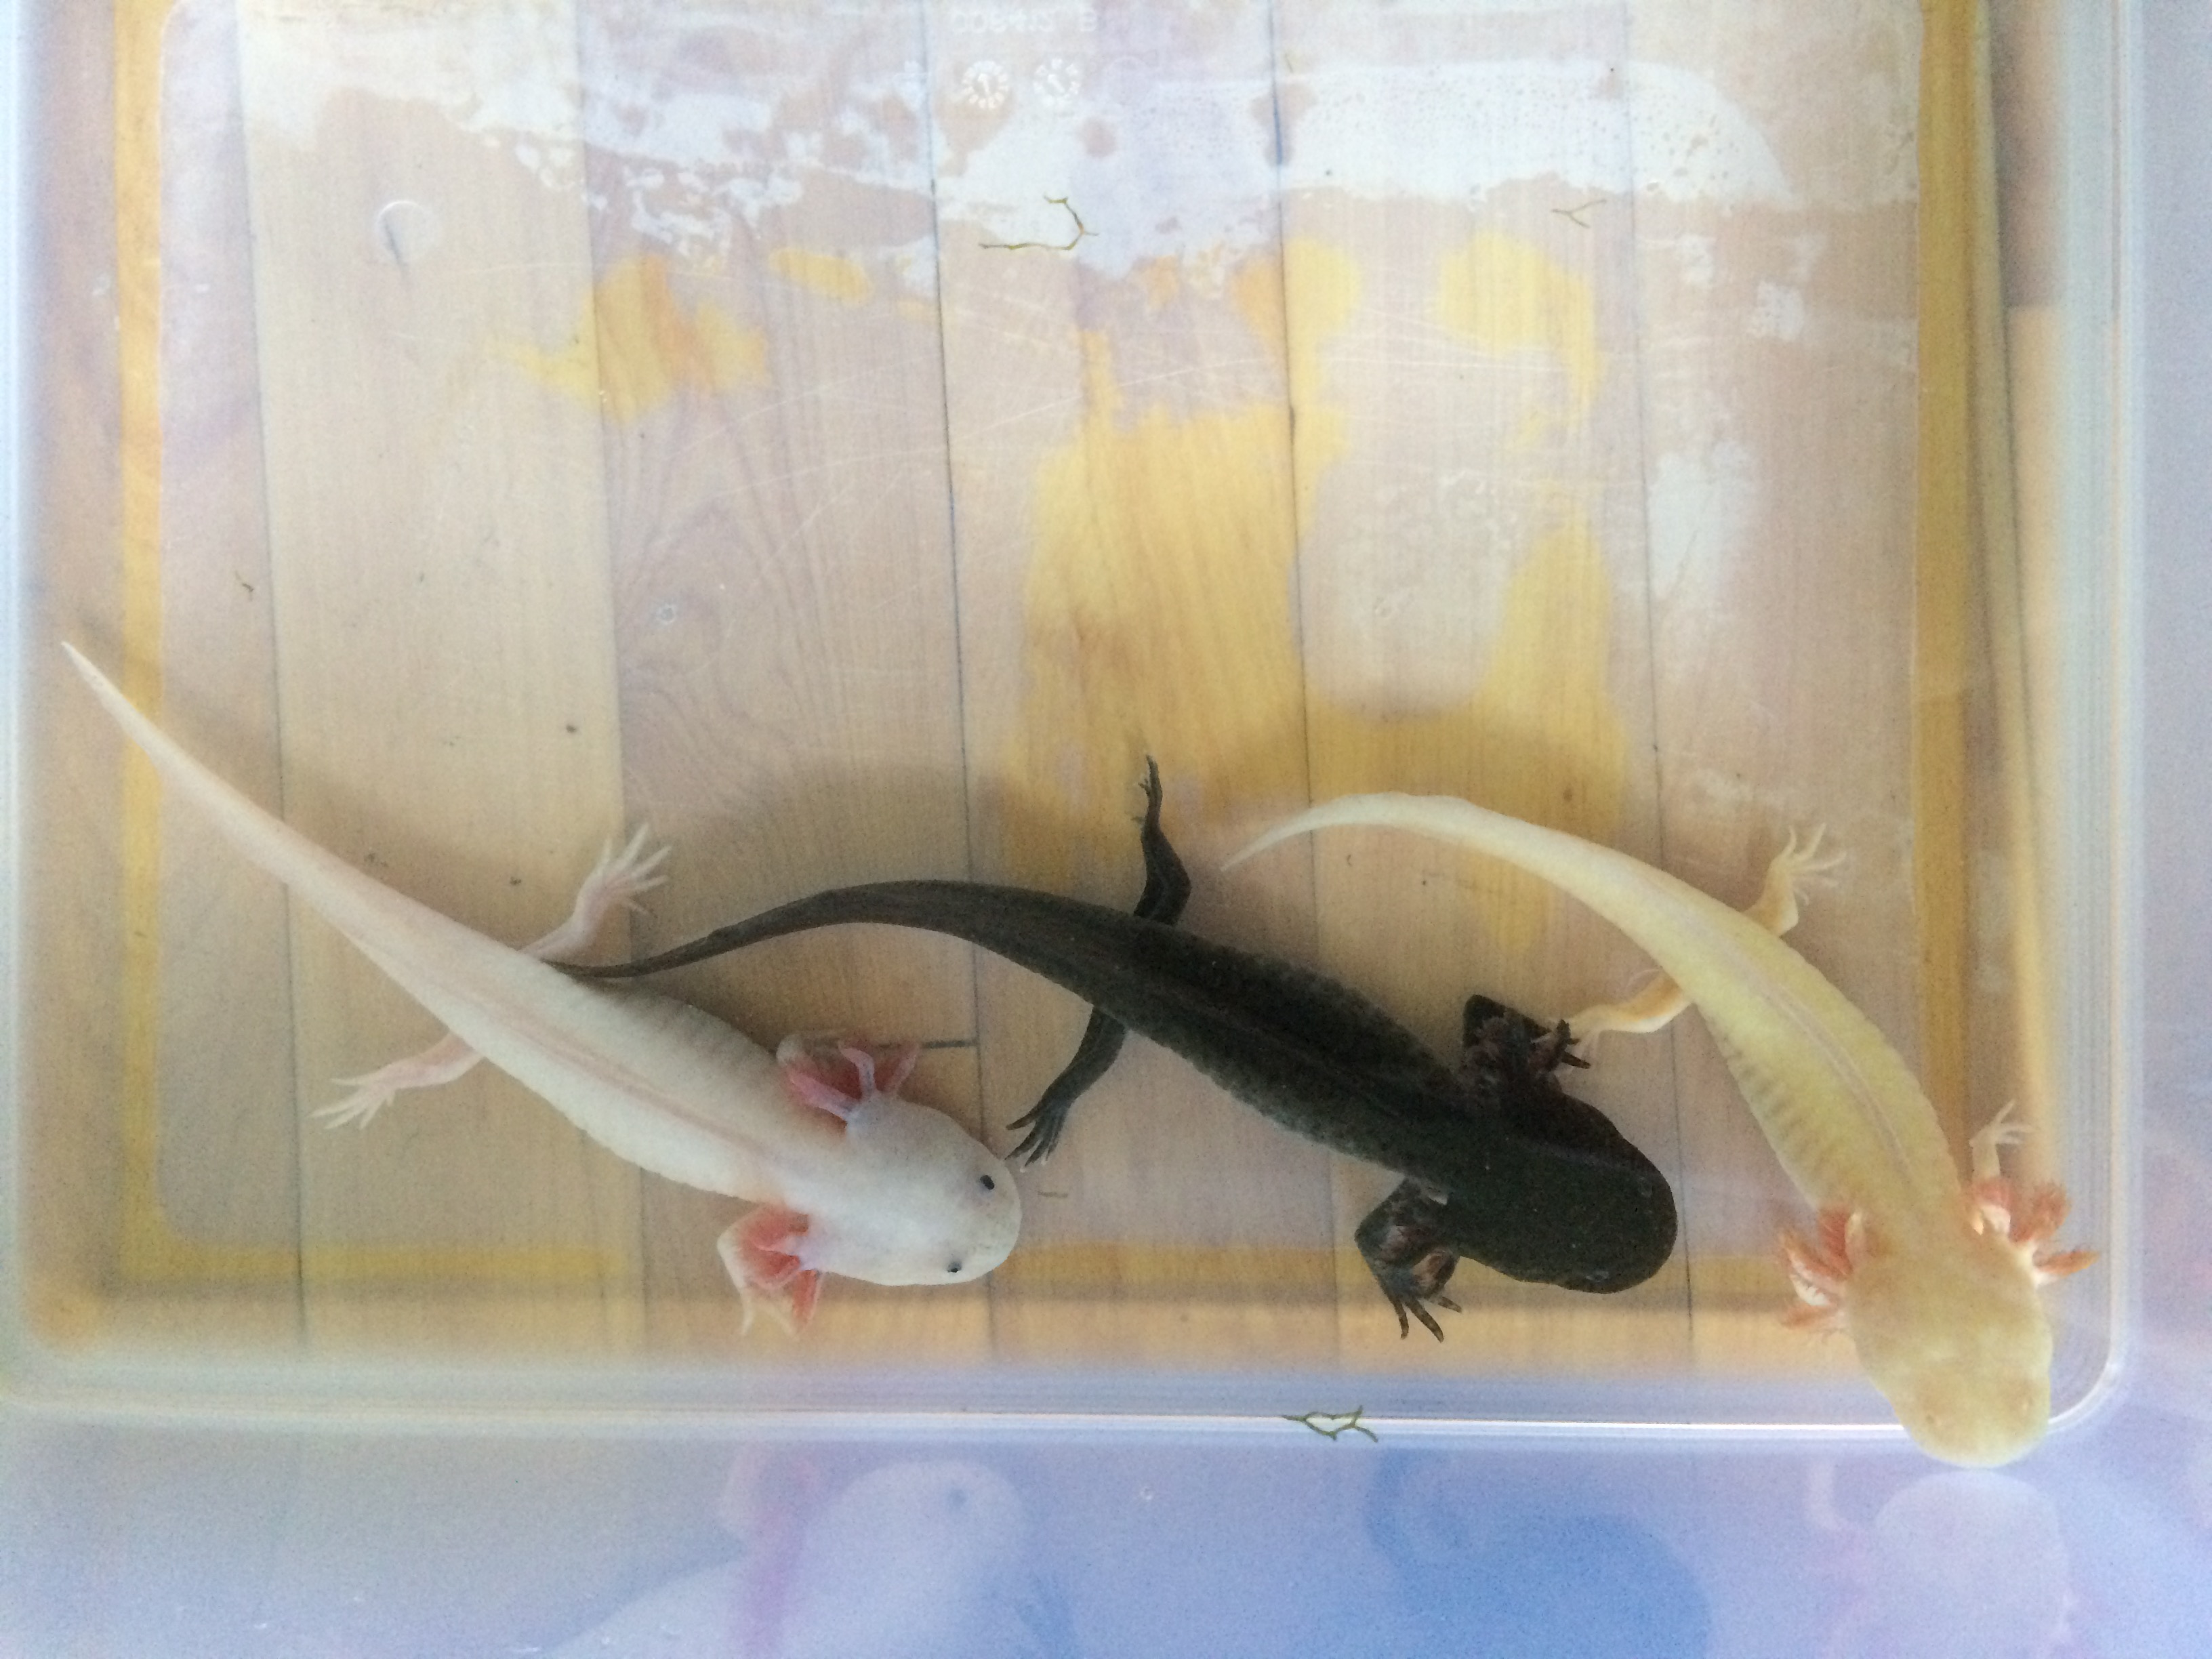 Axolotl Genetics Part 1 Color Pigments Water Critters